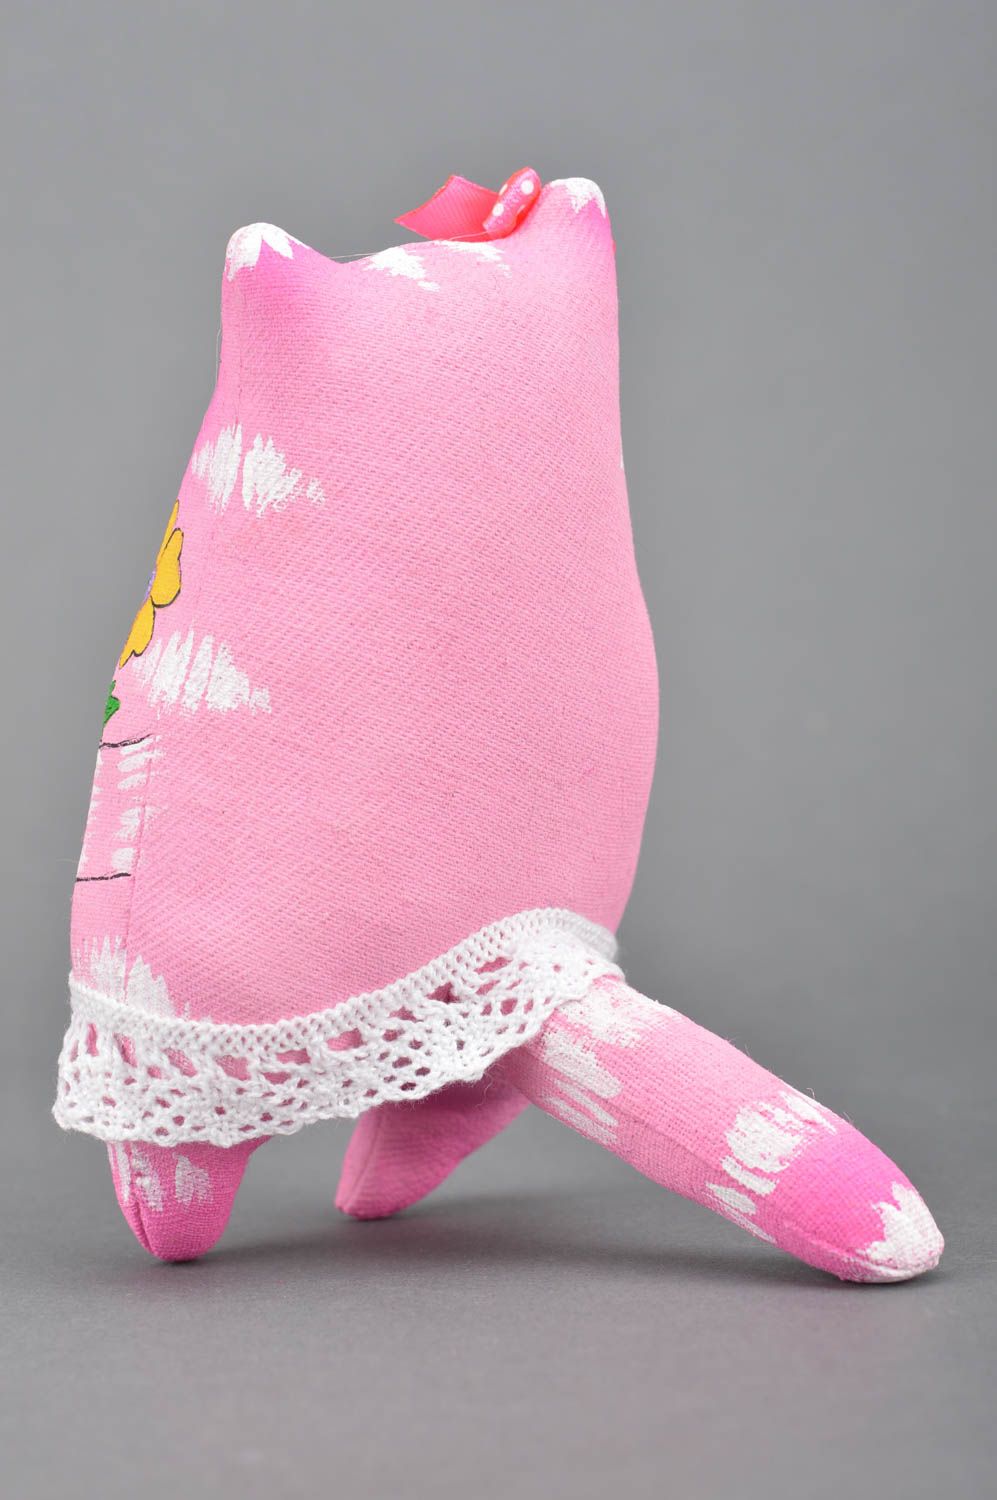 Jouet mou chat rose en tissu de coton peint de couleurs acryliques fait main photo 5